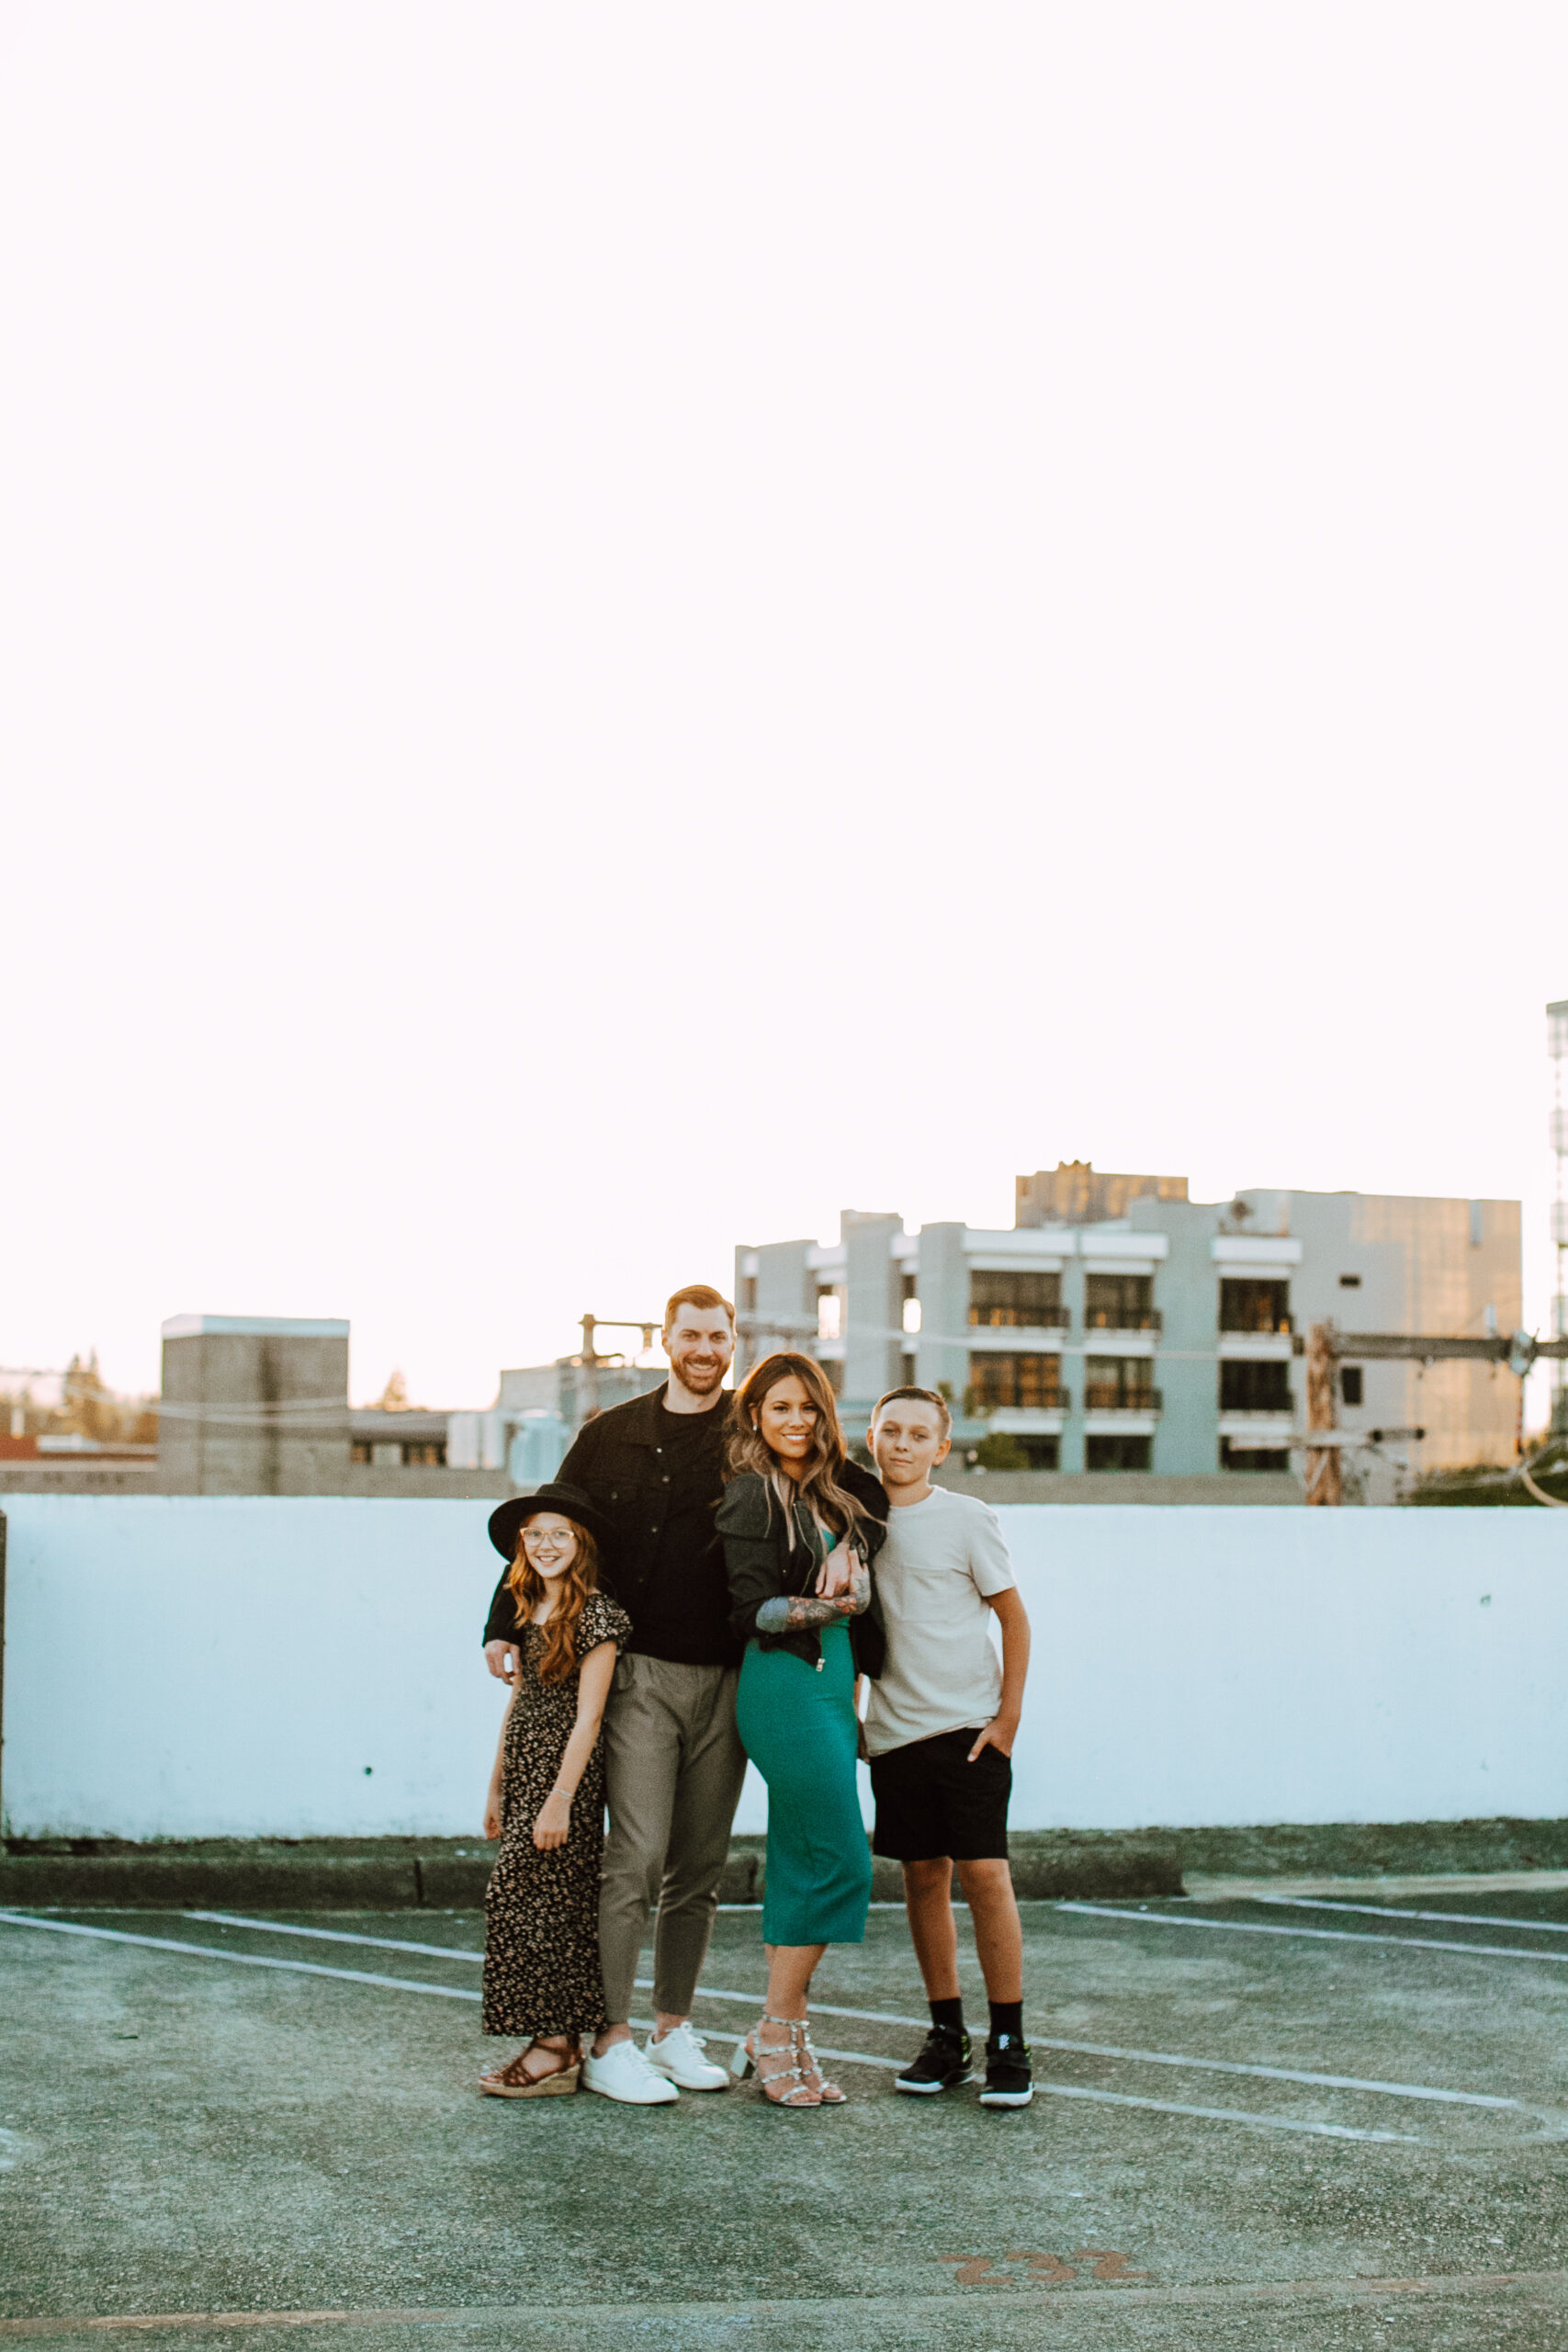 Family posing for photos in Bremerton, Washington